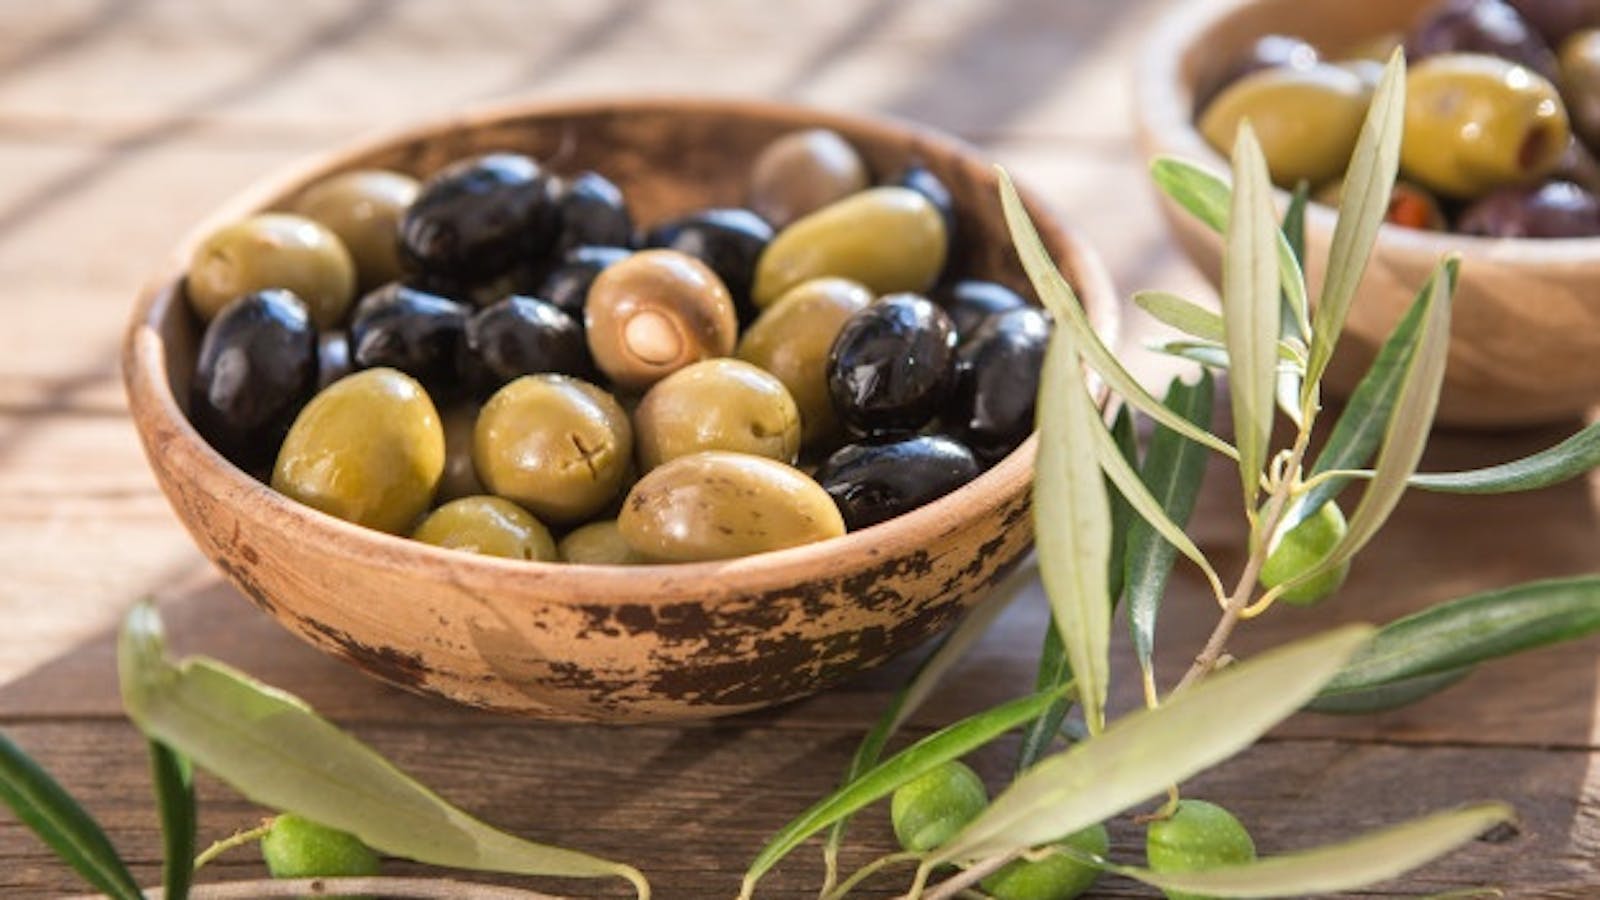 Harvest of Kalamata olives